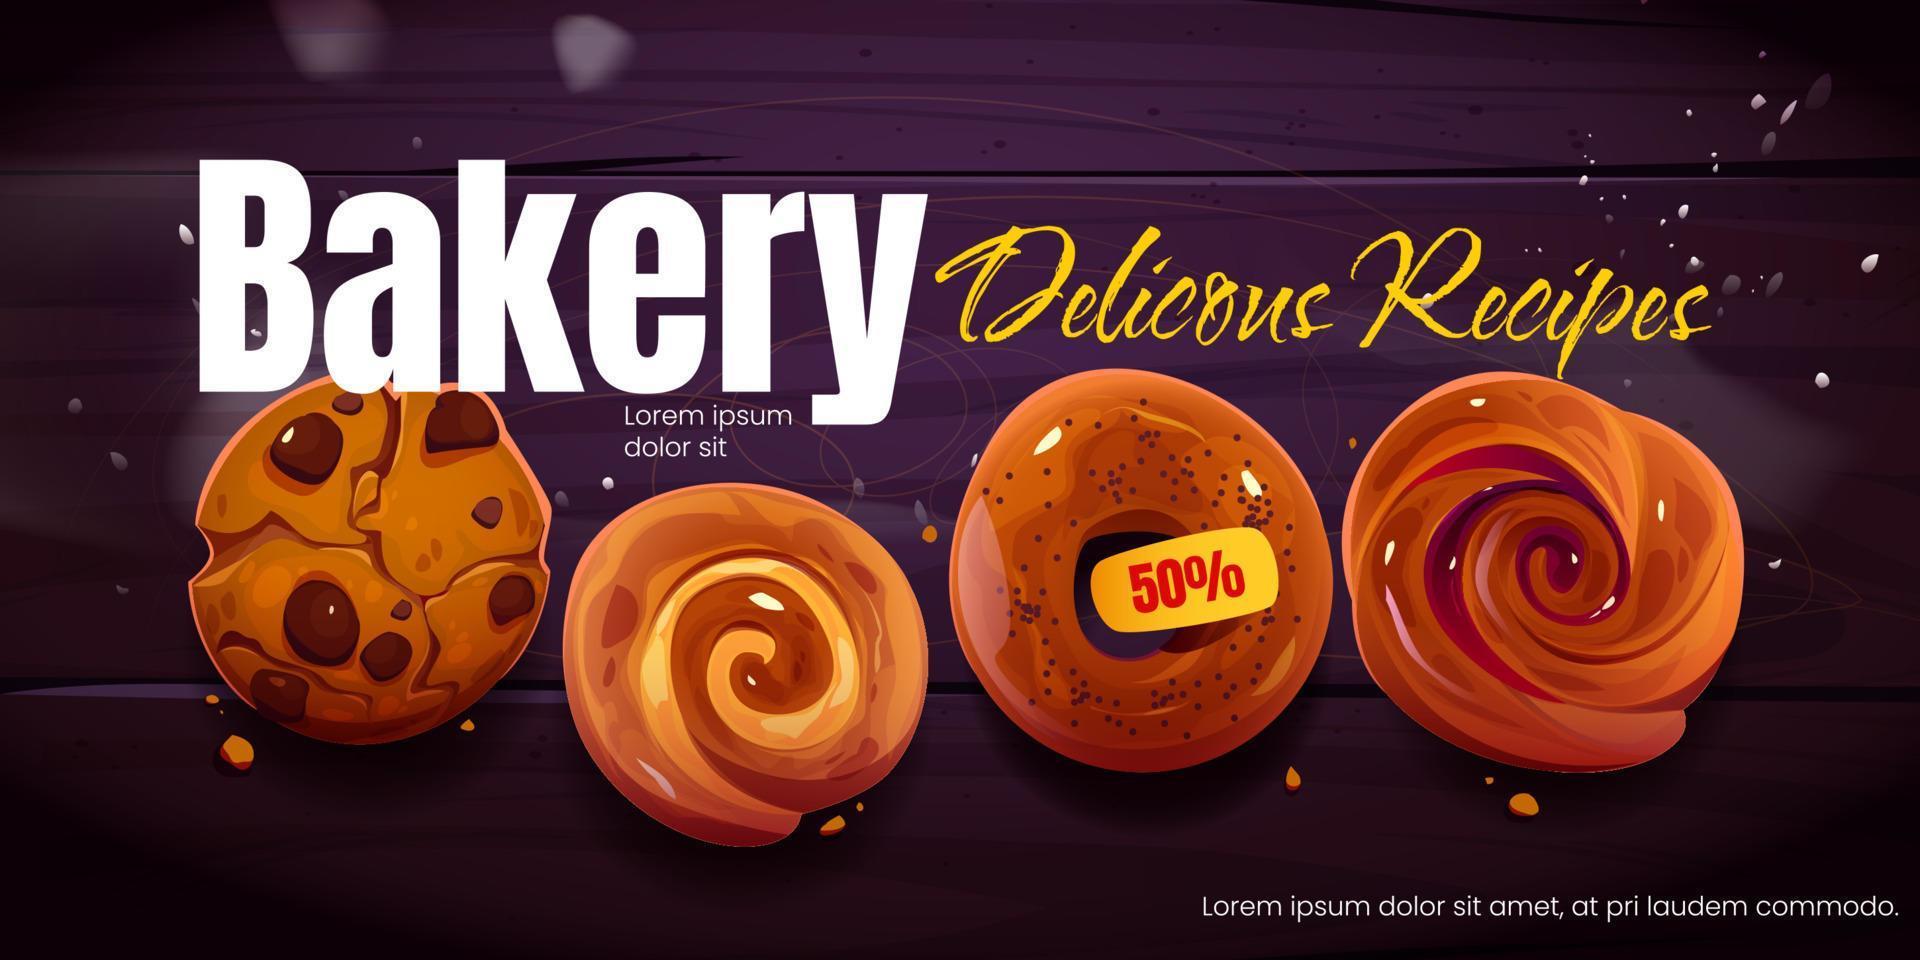 pancarta promocional de panadería, diseño de anuncios en redes sociales vector